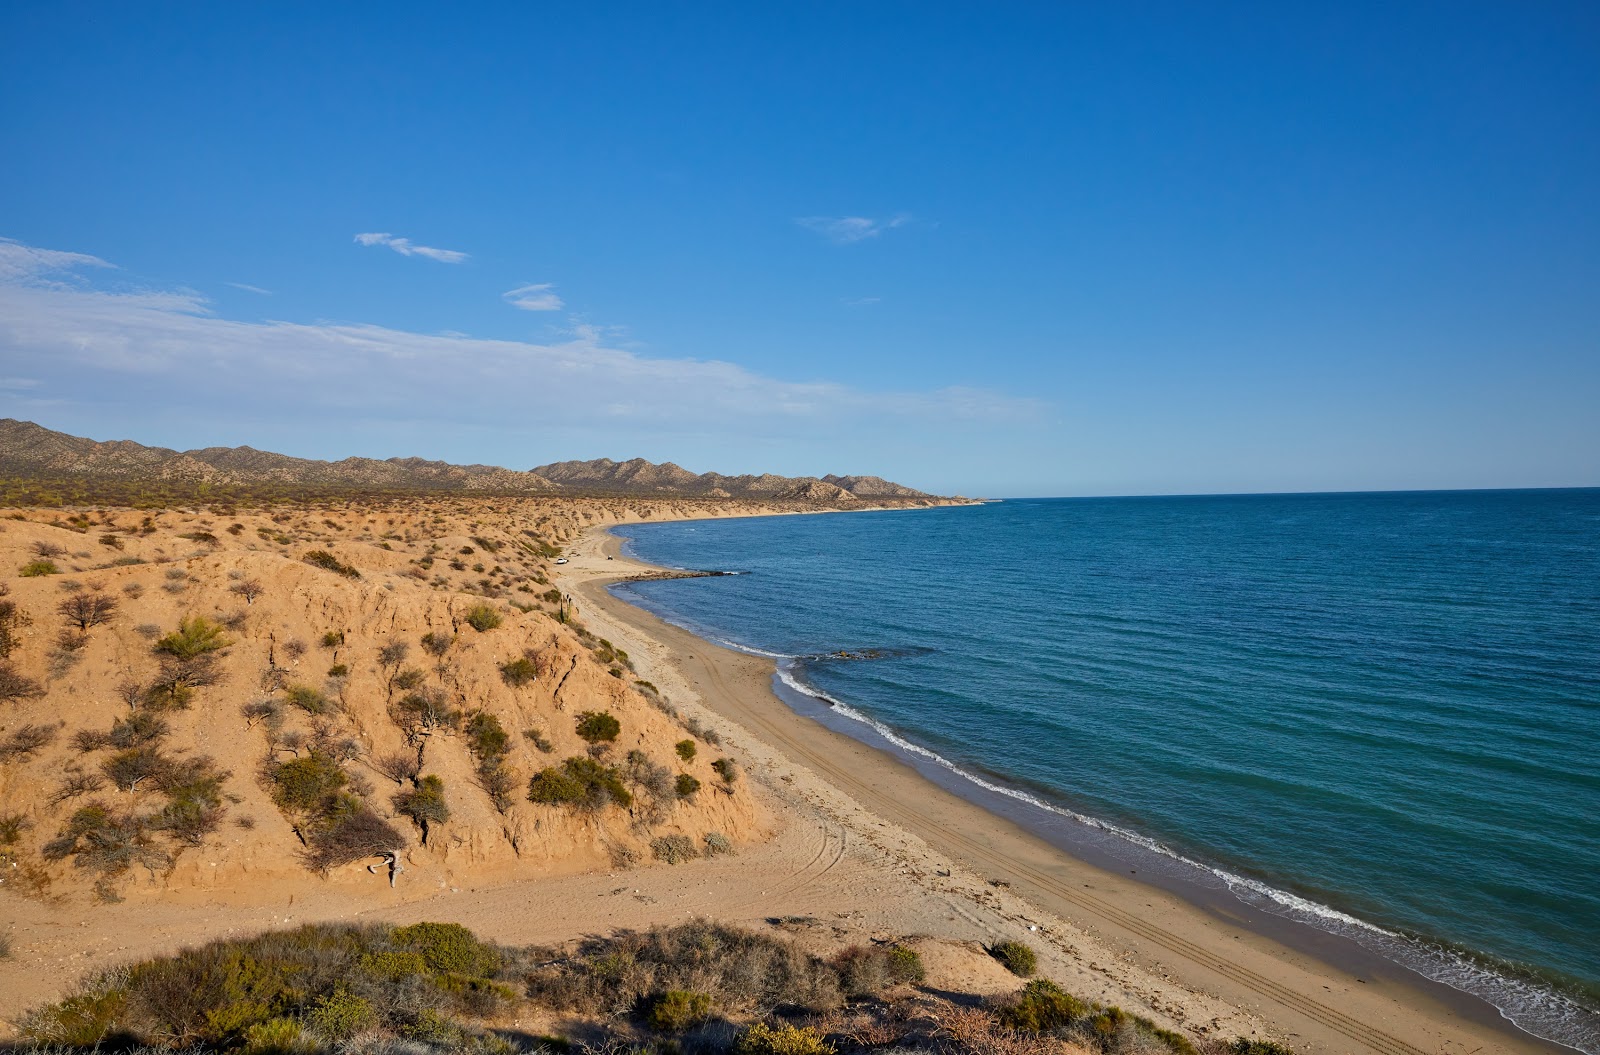 Foto de Playa Santa Rosa com areia brilhante superfície